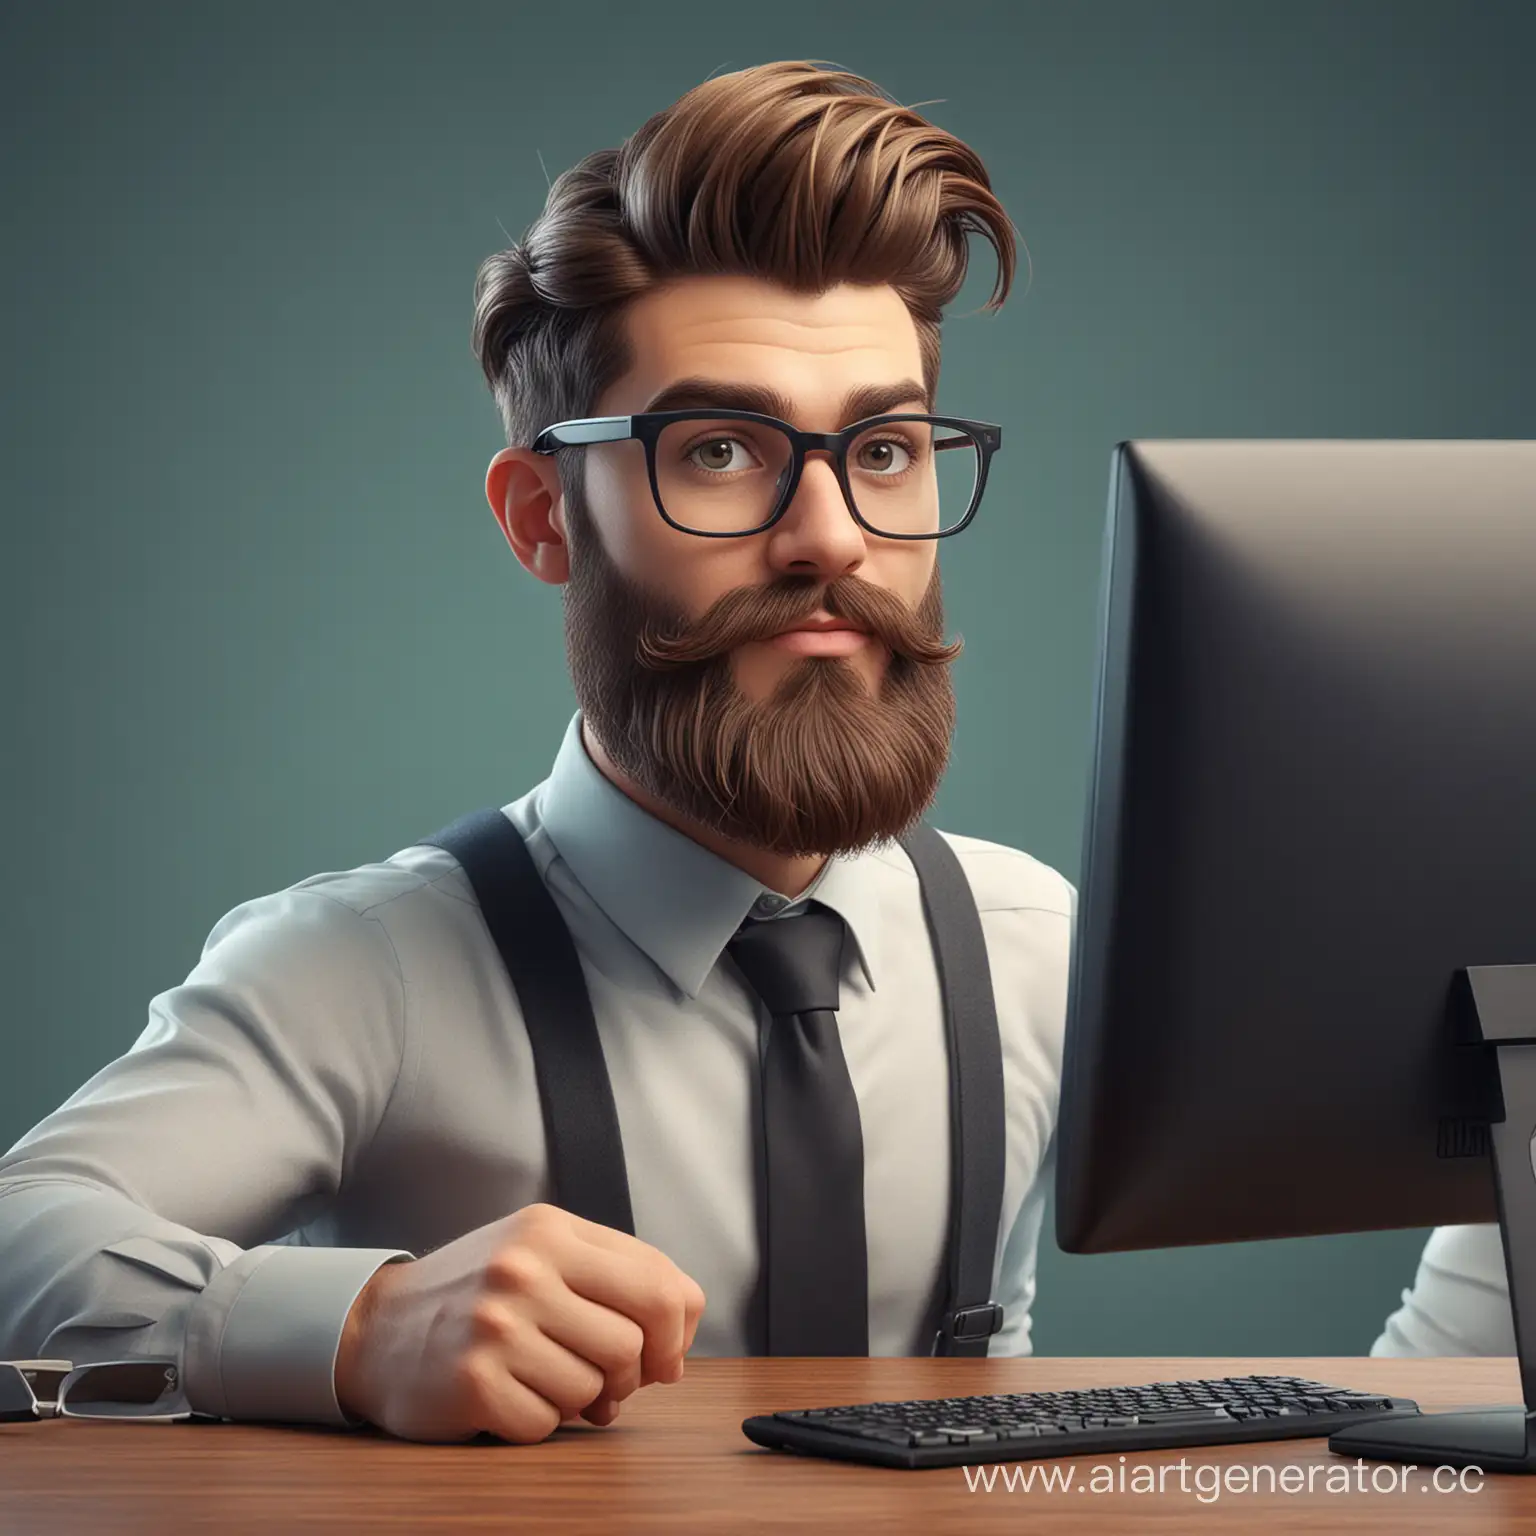 3D-иллюстрация хипстера-бизнесмена с очками и бородой за компьютером
